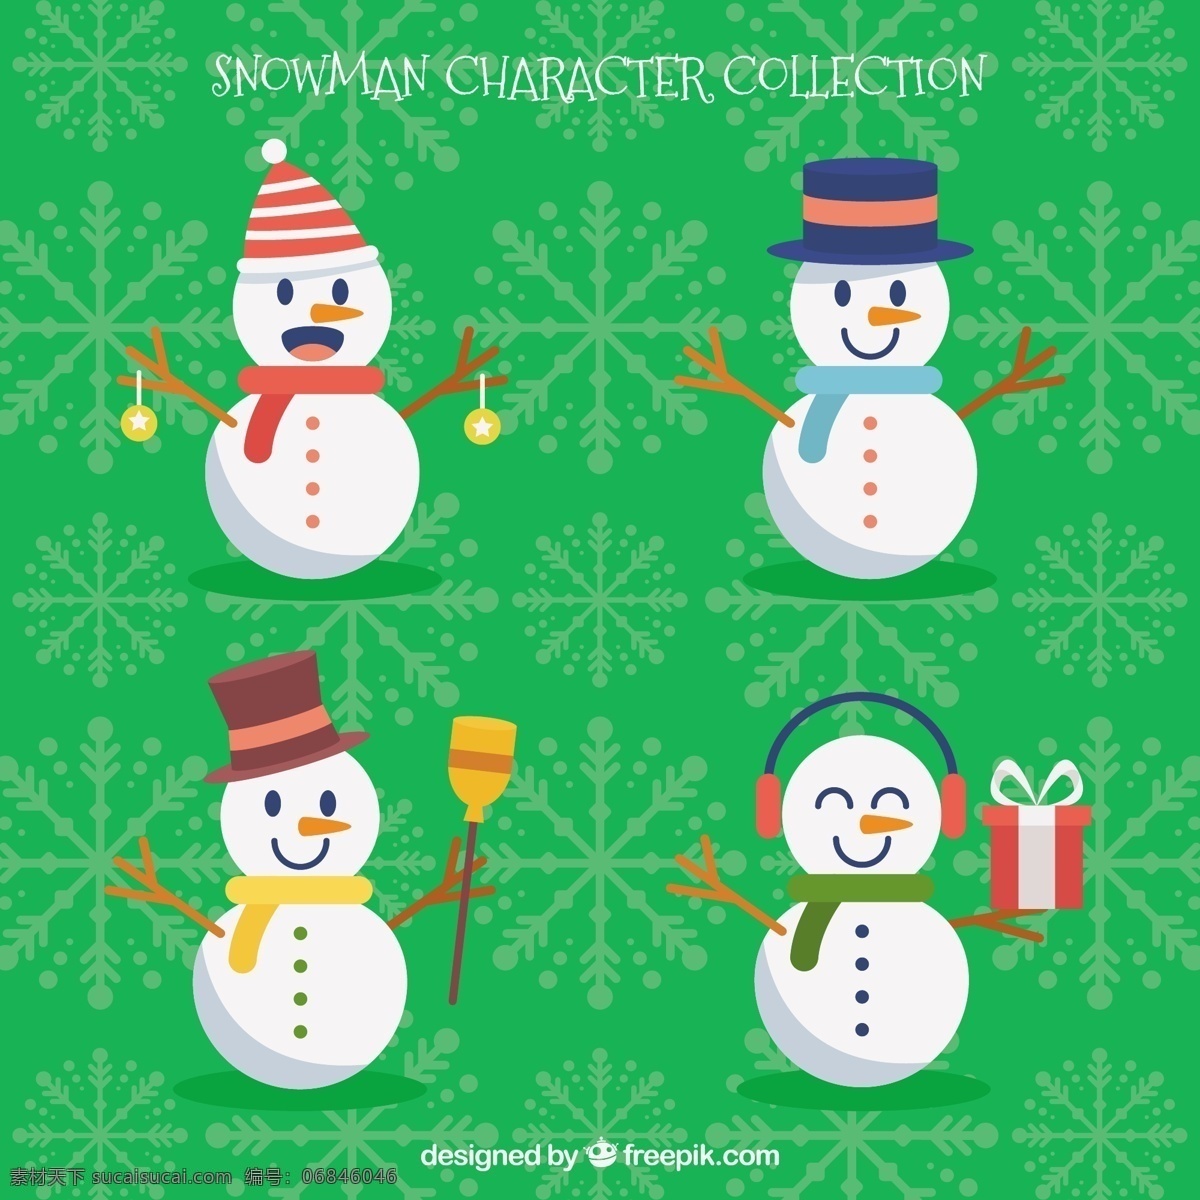 平面设计 各种 微笑 雪人 圣诞节 几何 新的一年 快乐的礼物 新年 圣诞快乐 冬天 糖果 扁平 性格 新的帽子 装饰 年 节日快乐